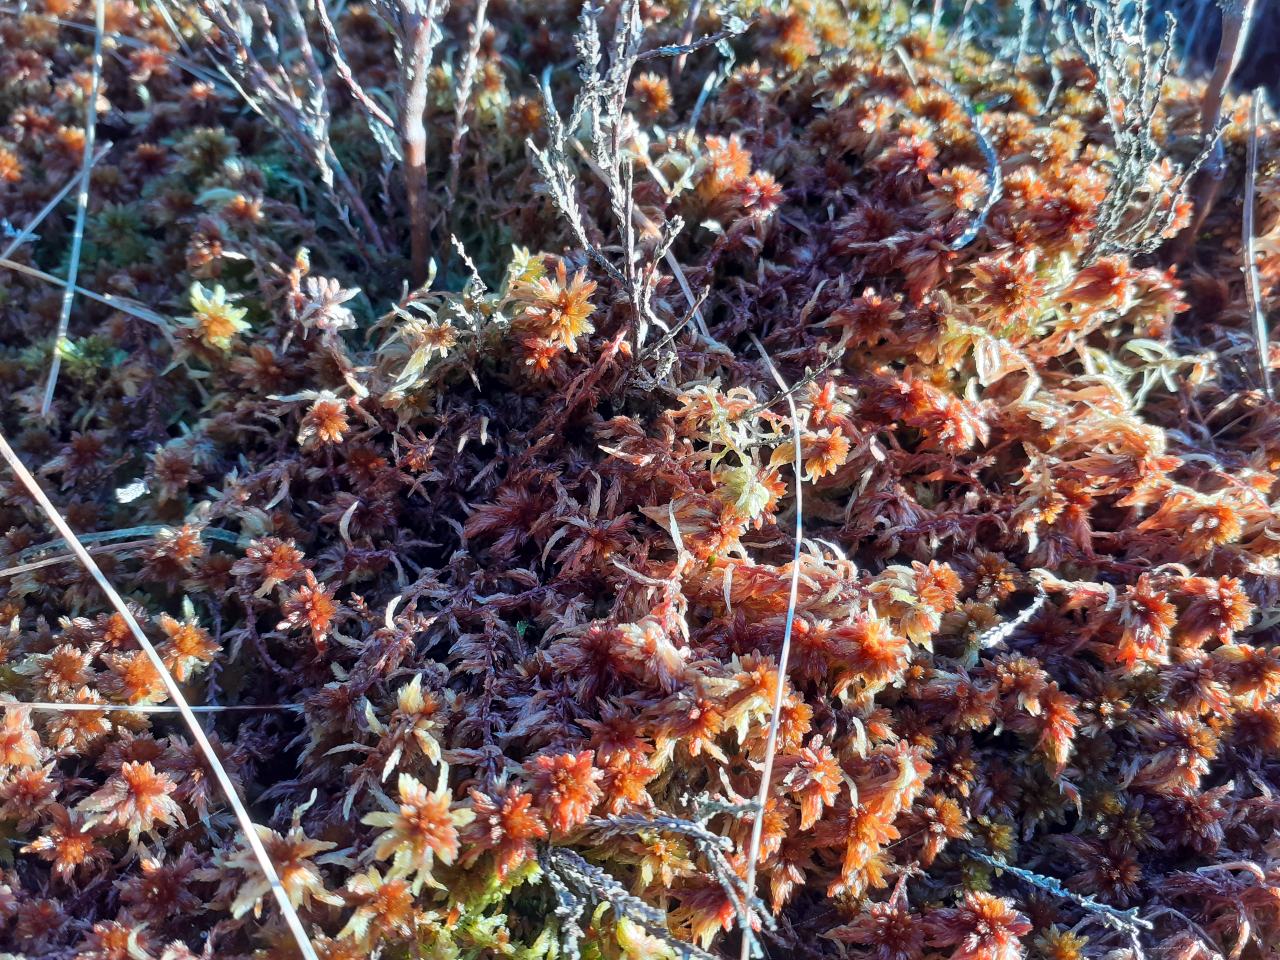 Orange sphagnum moss